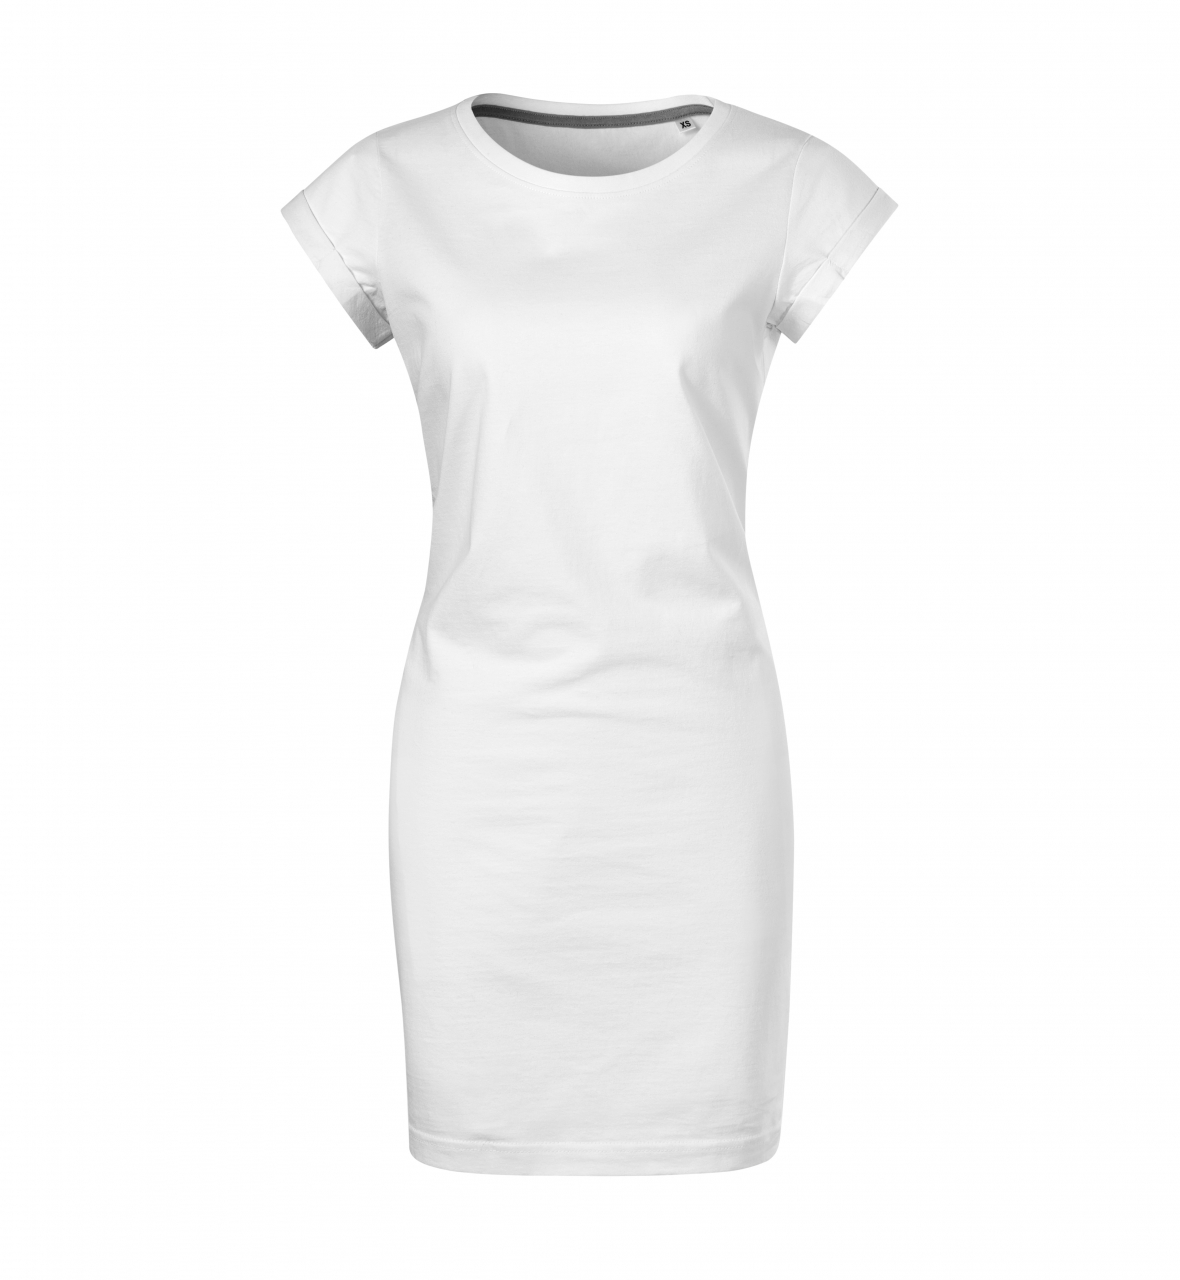 Šaty dámské Malfini Freedom - bílé, L